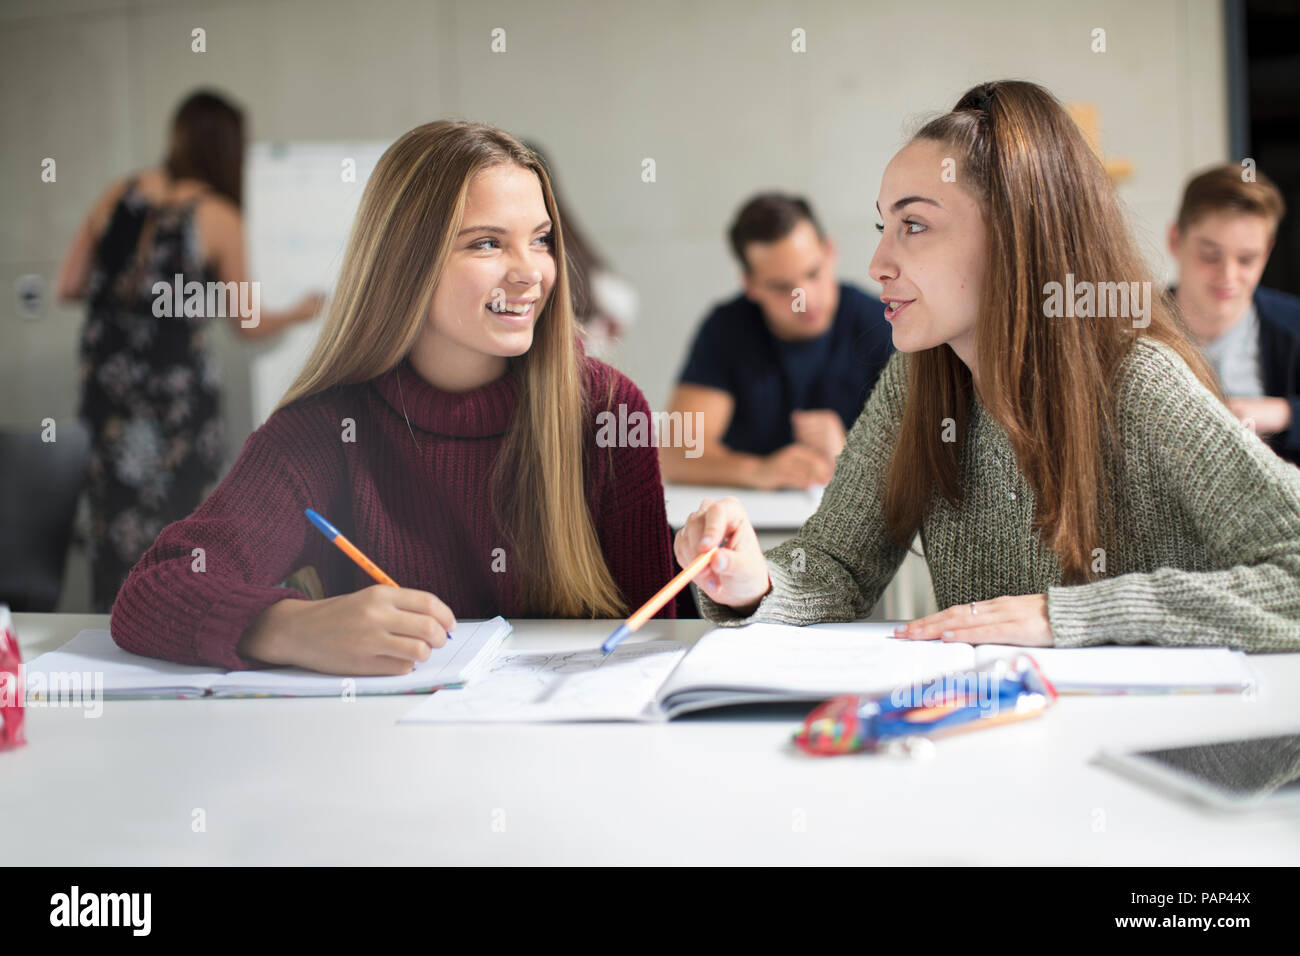 Lächelnde Mädchen im Teenager-Alter sprechen in der Klasse Stockfoto